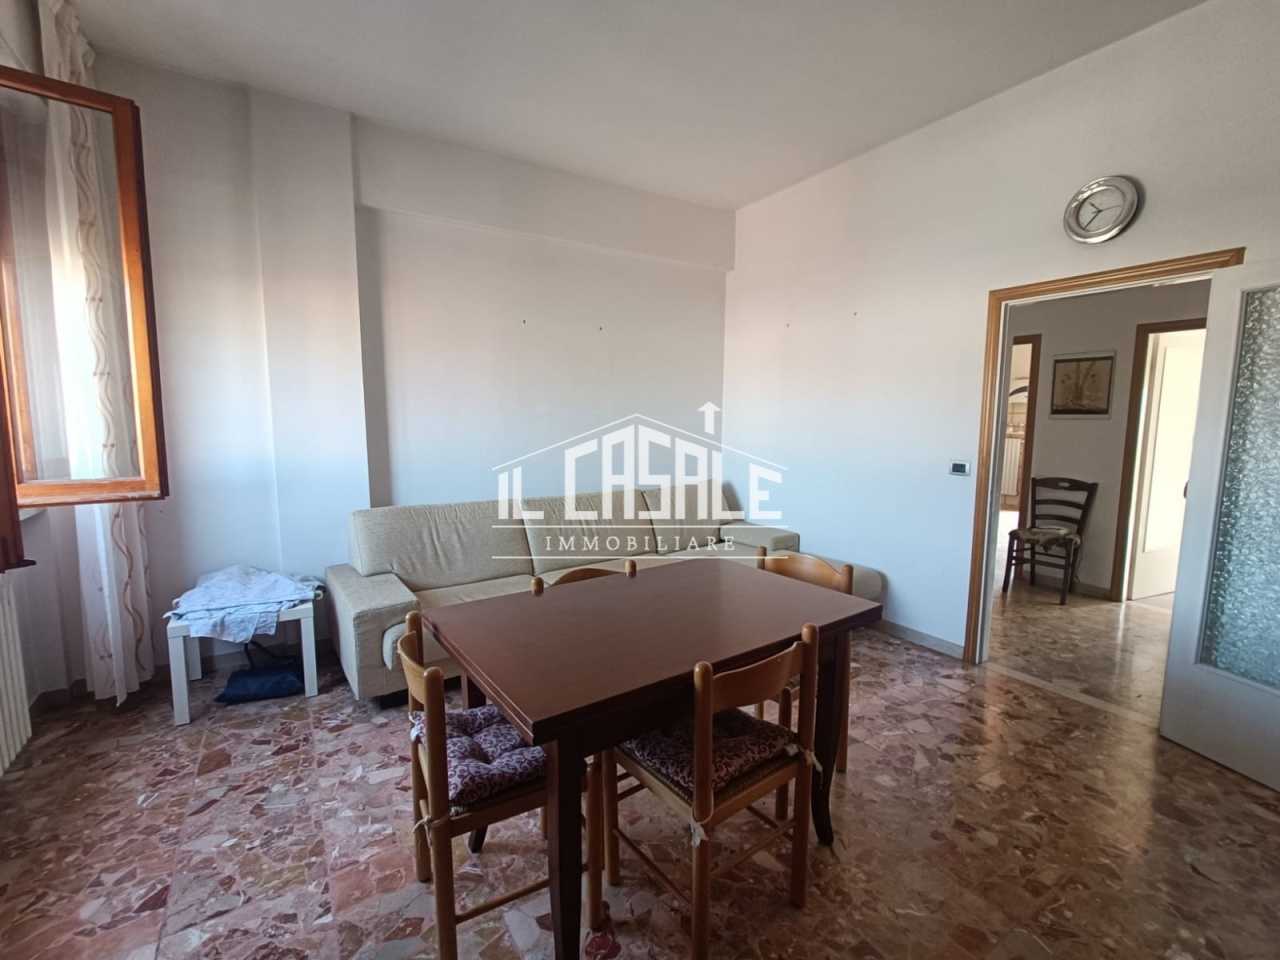 Appartamento in vendita a Vicchio, 5 locali, prezzo € 185.000 | PortaleAgenzieImmobiliari.it